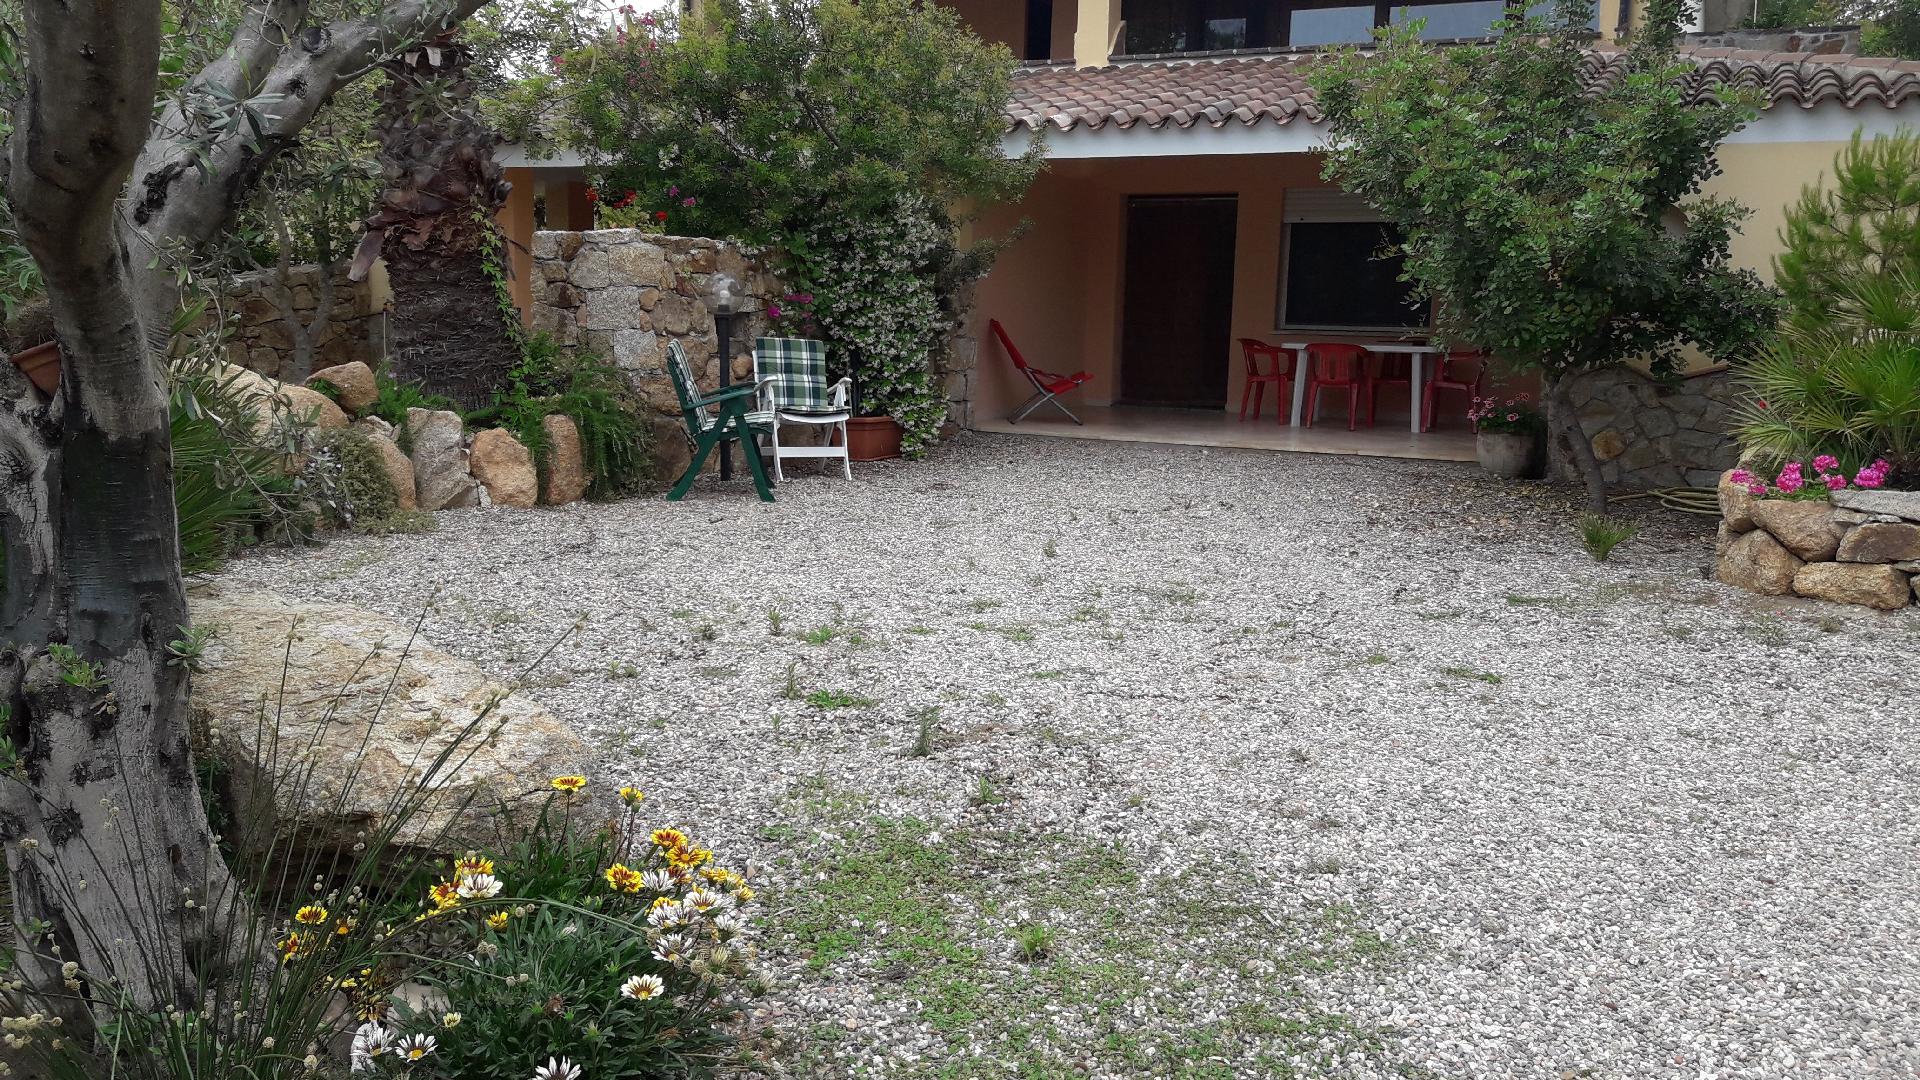 Ferienwohnung für 4 Personen ca. 40 m² i Ferienhaus in Italien